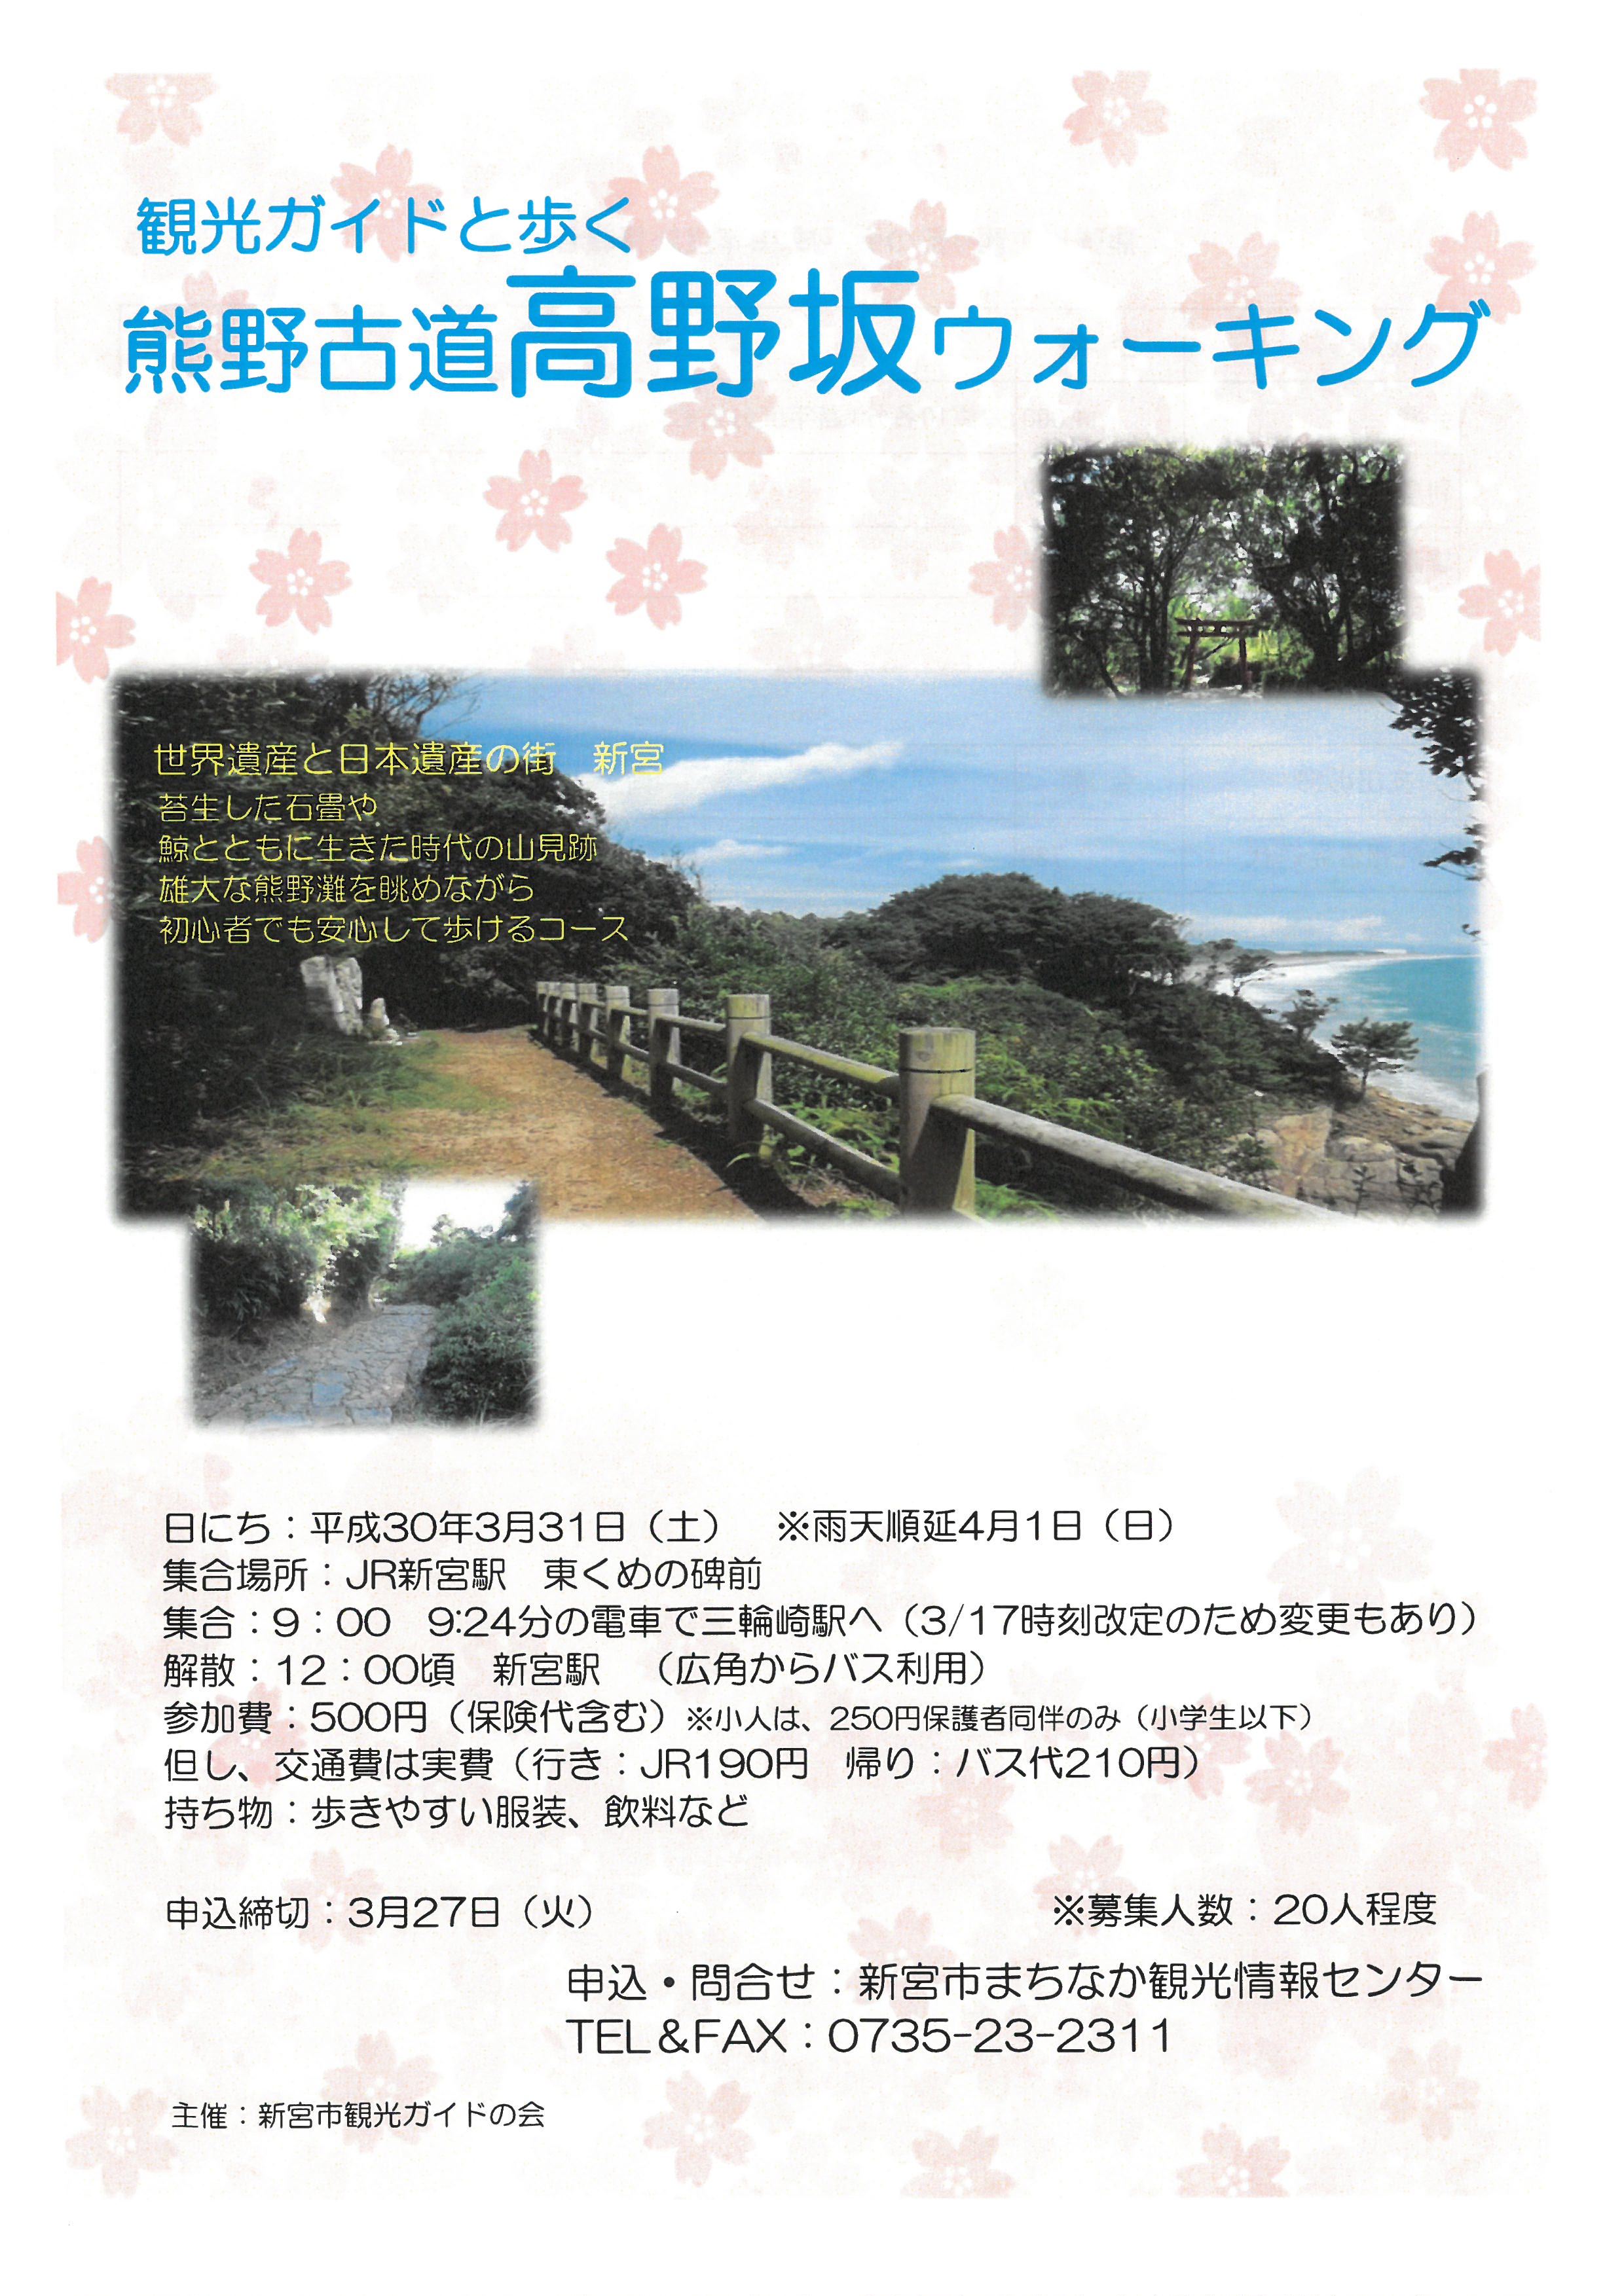 観光ガイドと歩く『熊野古道高野坂ウォークキング』の開催について